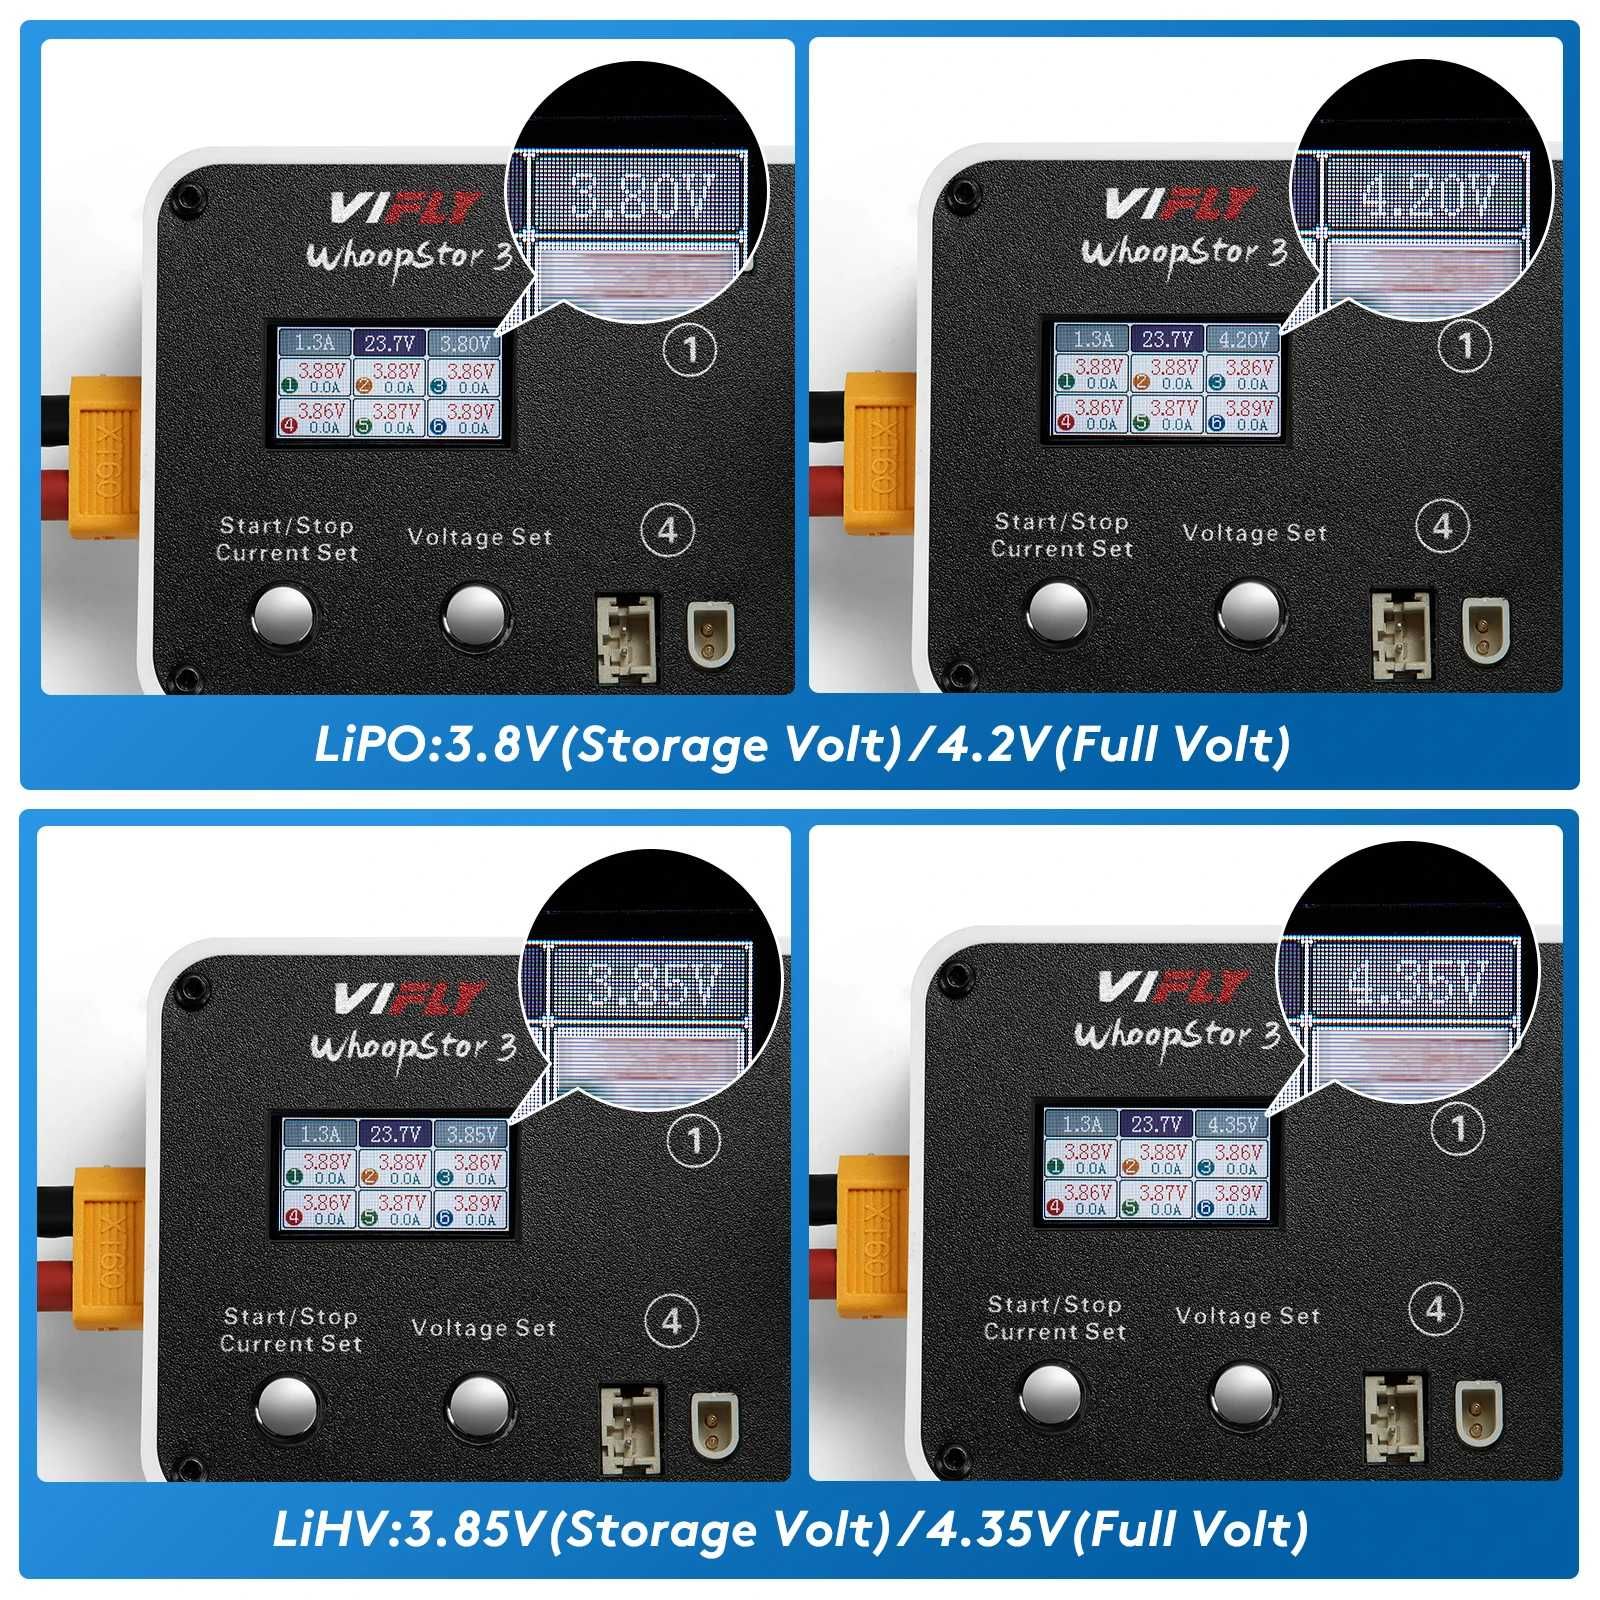 ViFly Whoopstor V3 Зарядний пристрій 6 портів 1S PH2.0 BT2.0